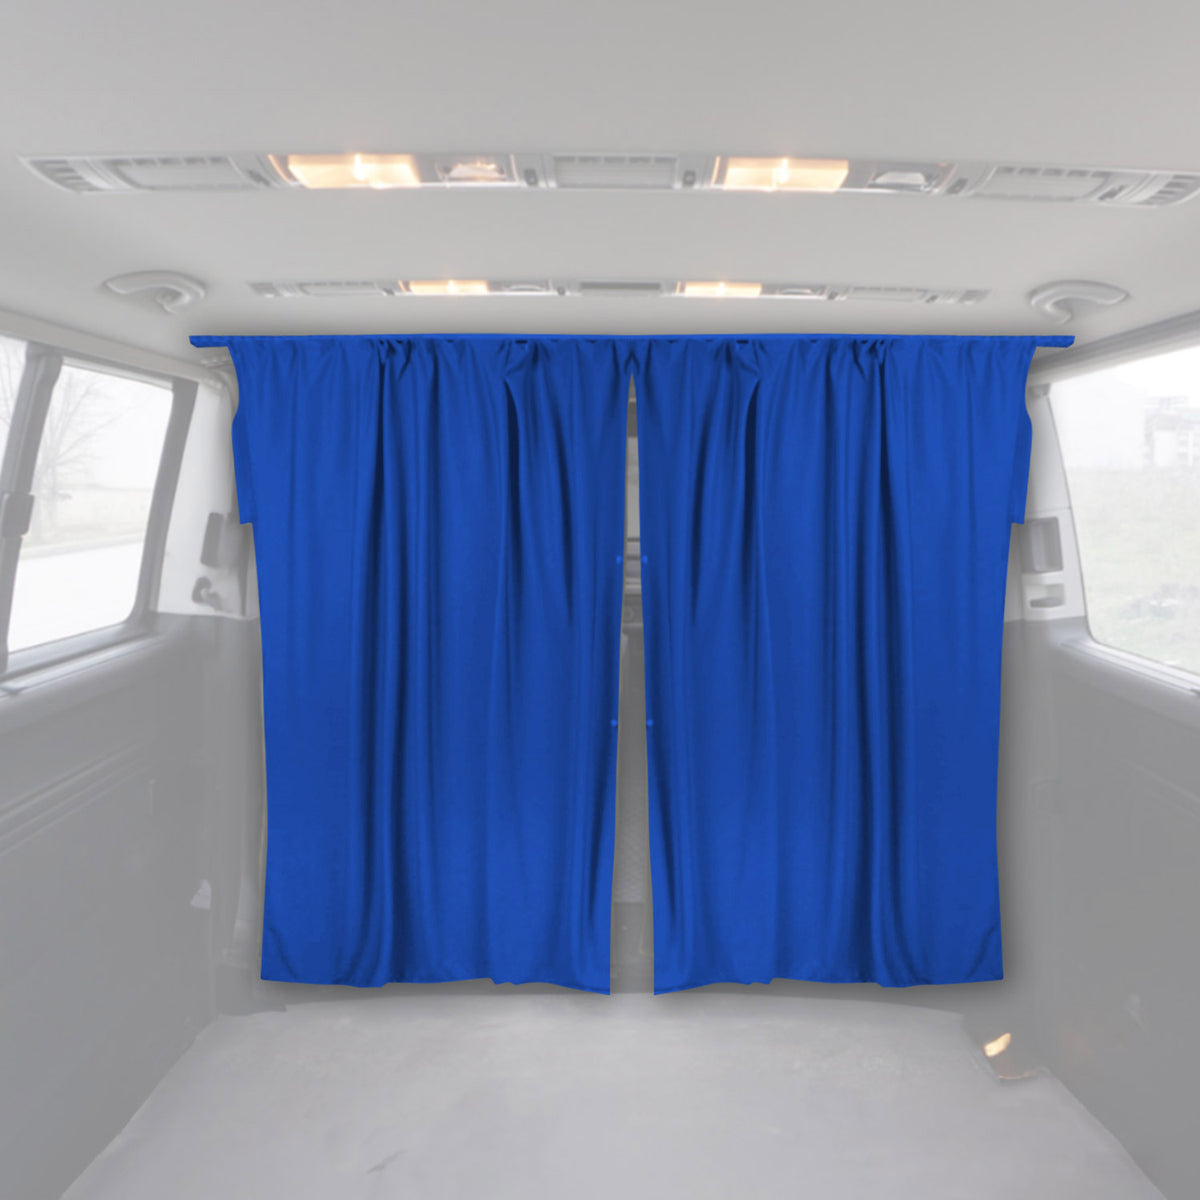 Fahrerhaus Führerhaus Gardinen Sonnenschutz für Dacia Lodgy Blau 2tlg